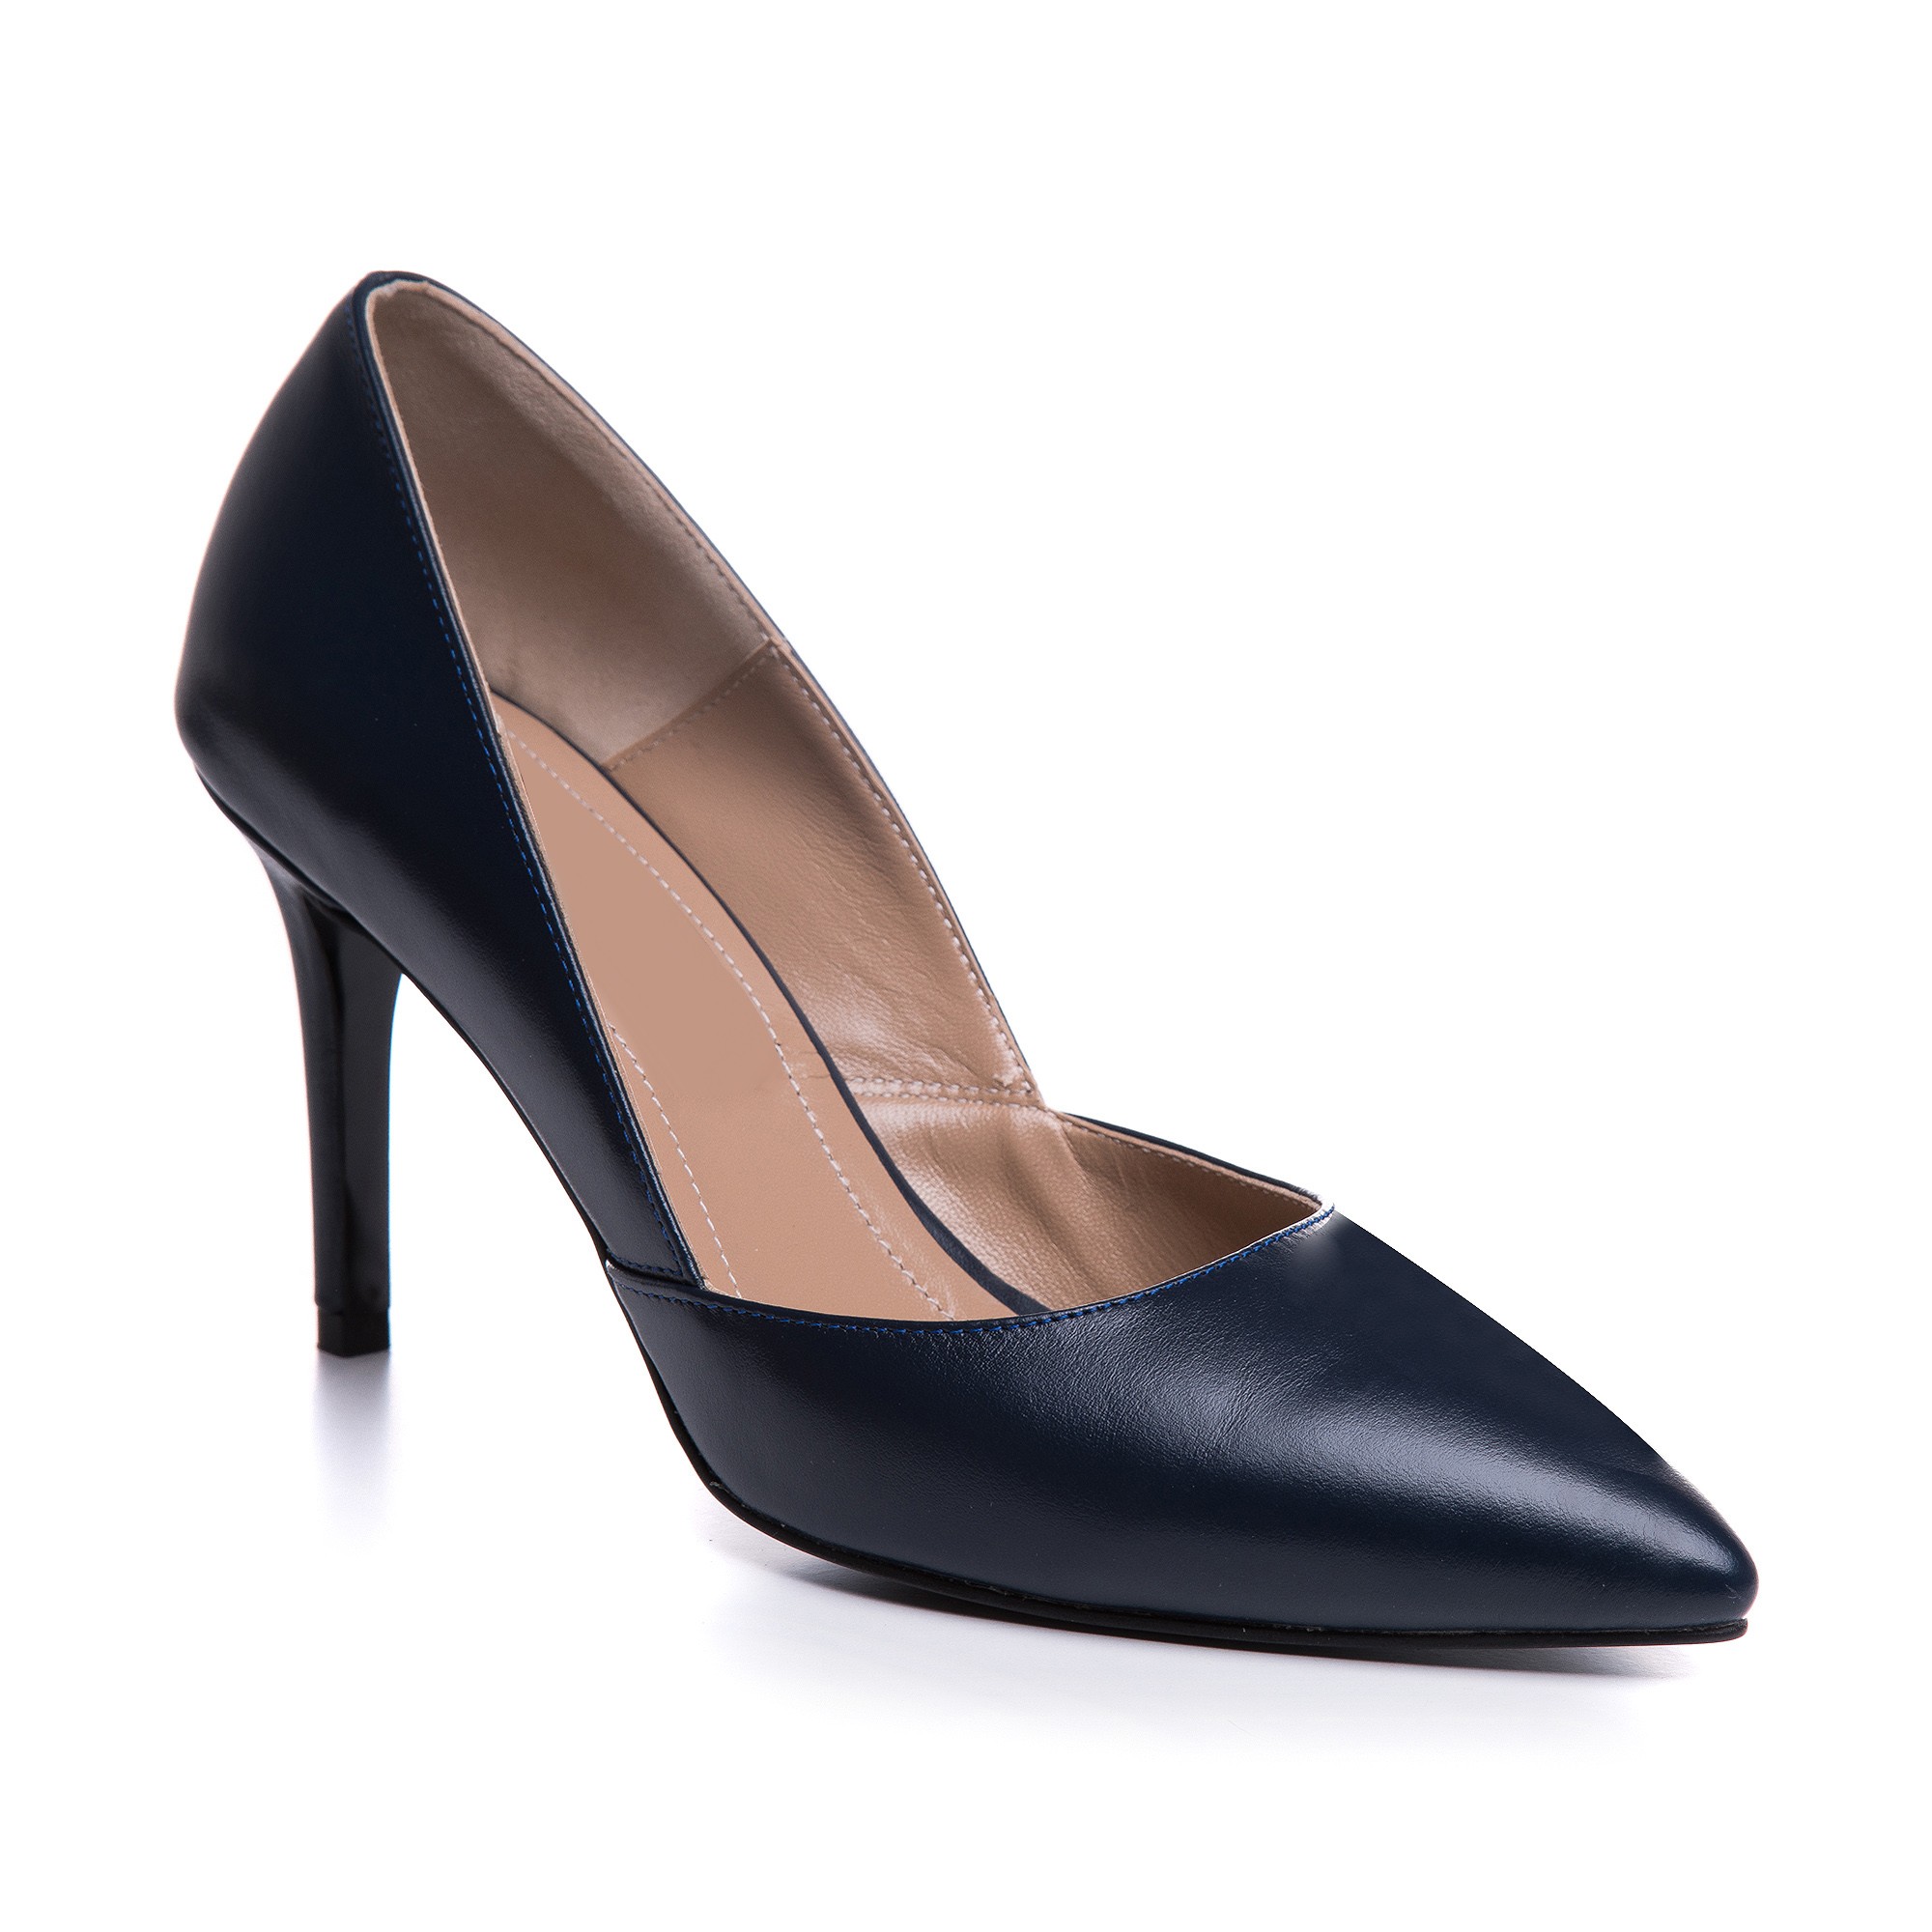 Pantofi Stiletto Piele Negru Anellis L24  - orice culoare